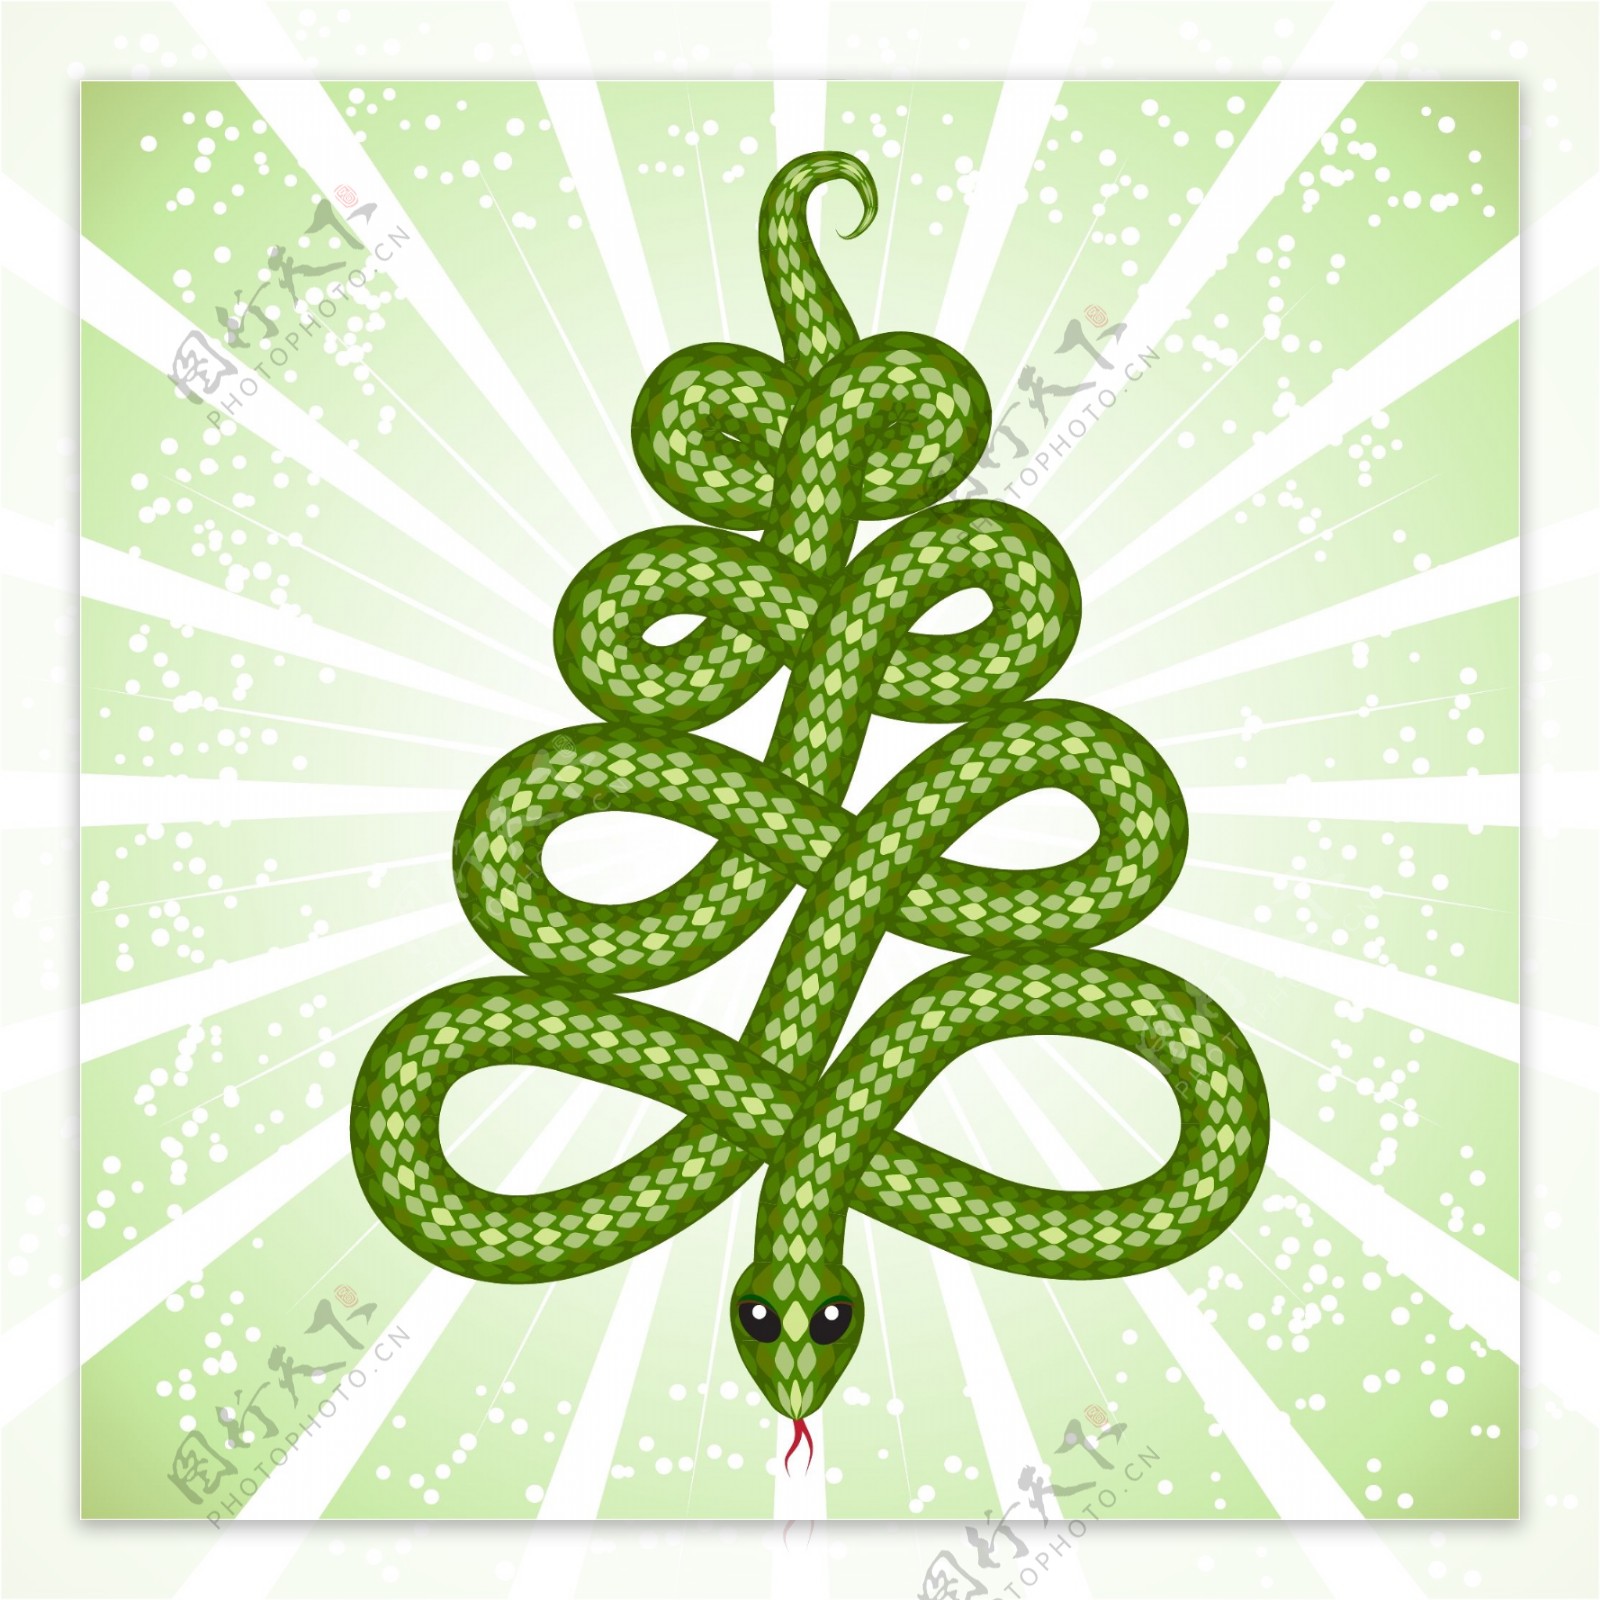 2013年的蛇的图形创意02载体材料